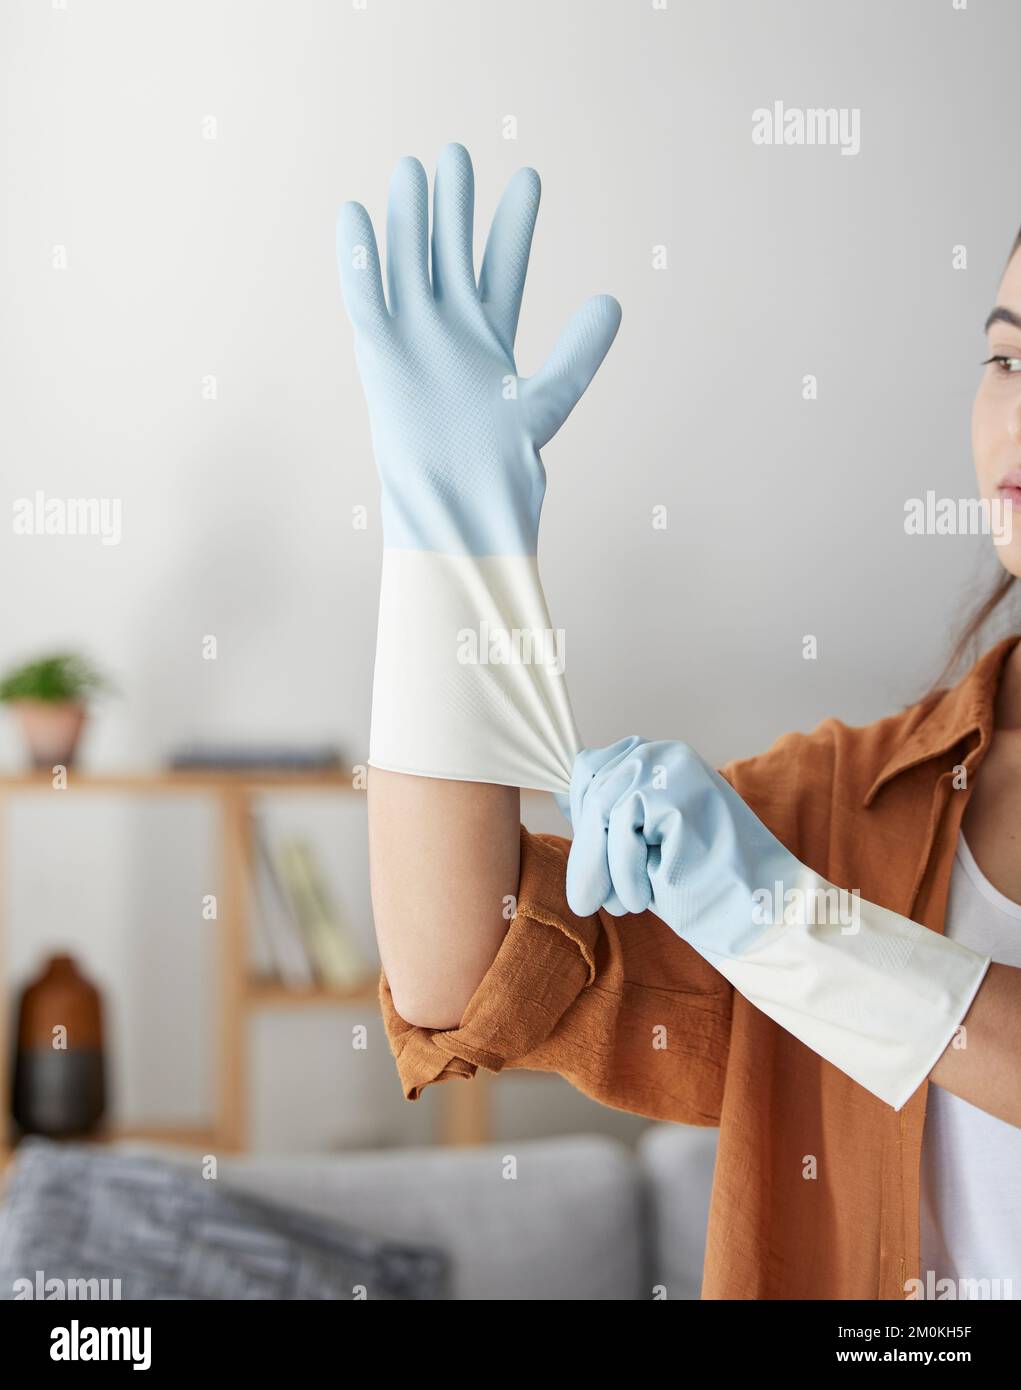 Frau, Handschuhe, und bereiten Sie sich auf Reinigung, Hygiene und Hausarbeit vor, in sauberem Service, Arbeit und Hausarbeit. Weibliche Hausangestellte, Bakterien und Stockfoto